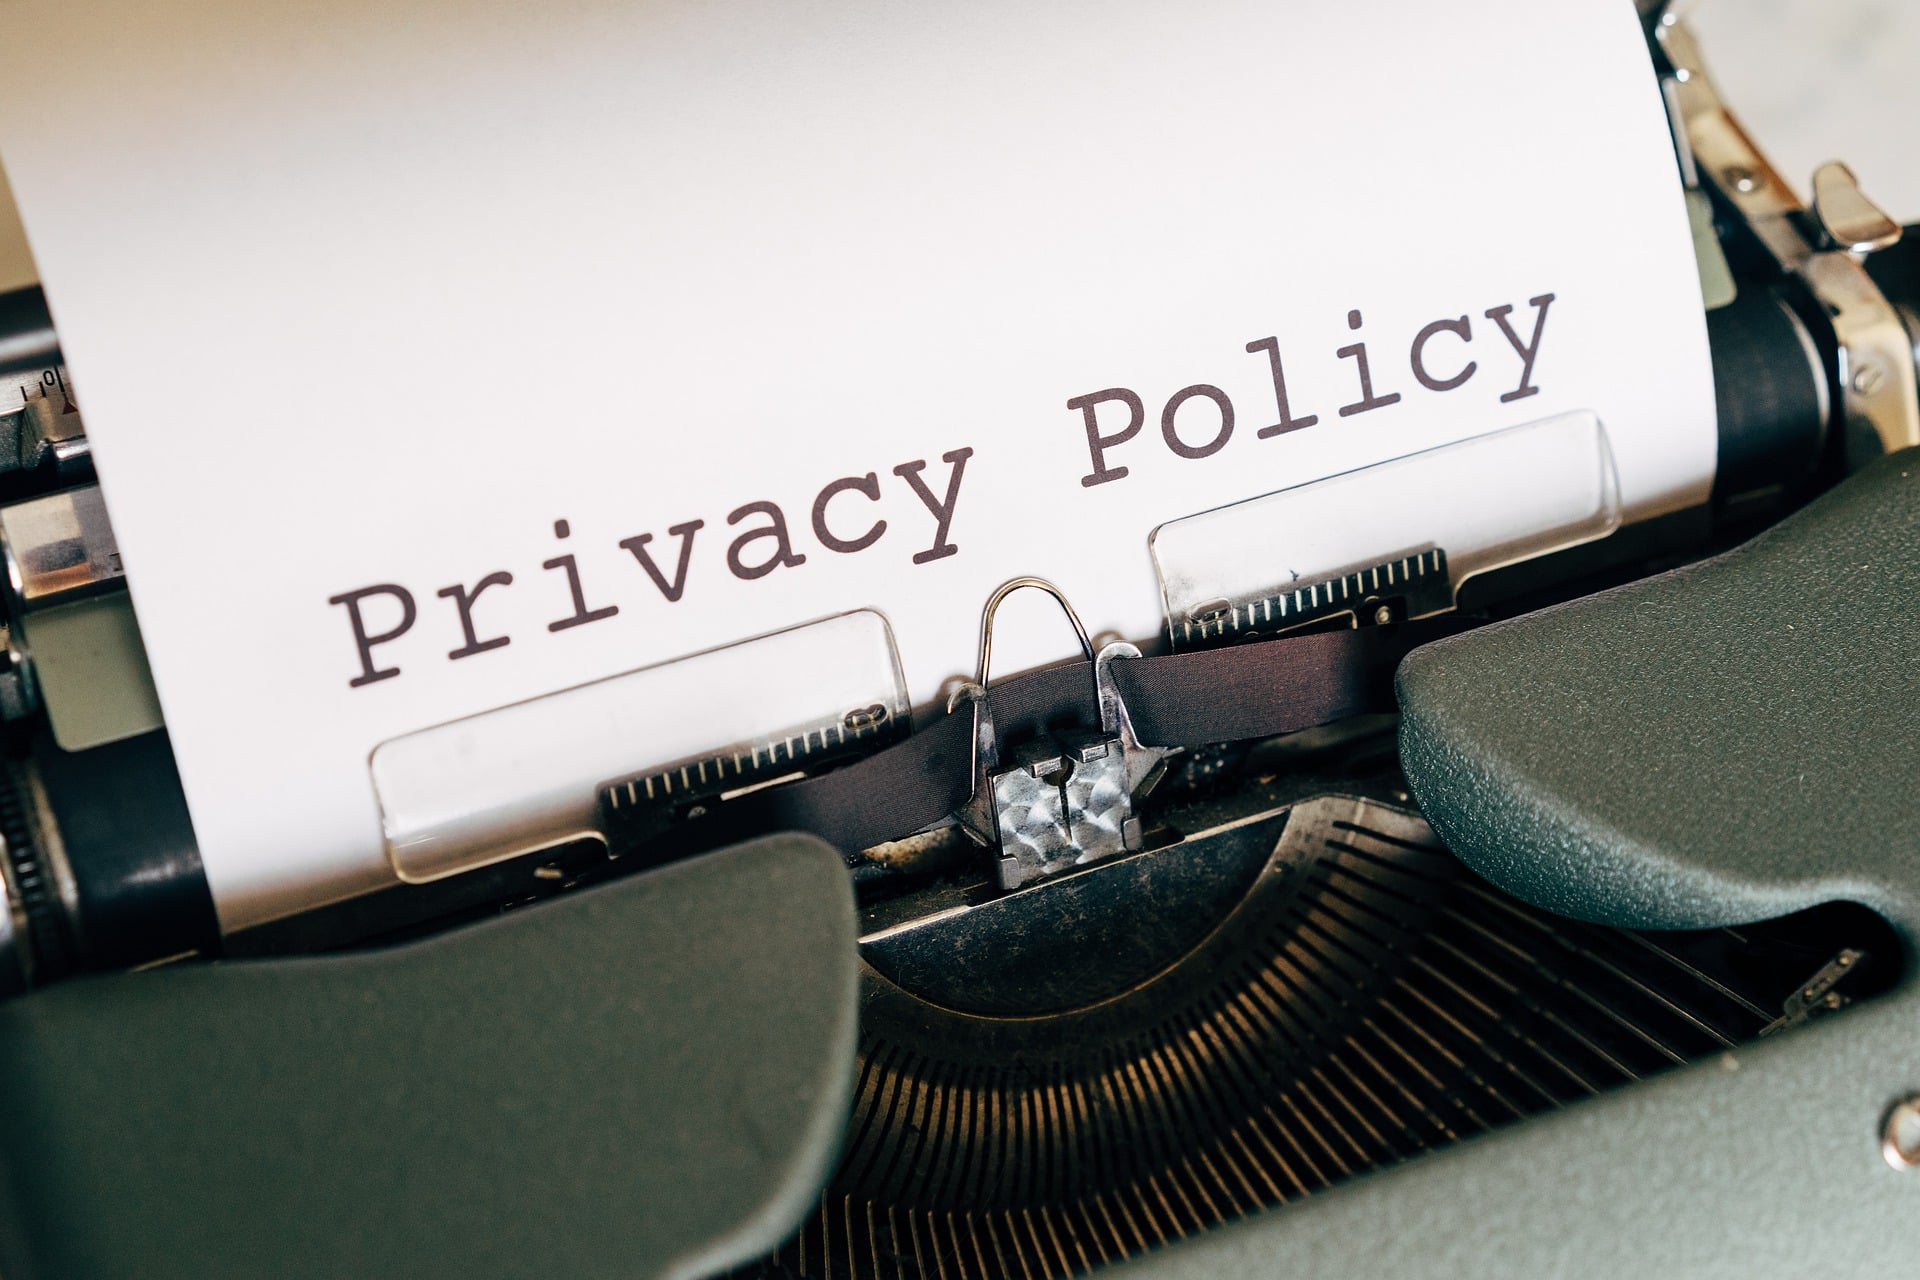 Politica de privacidad